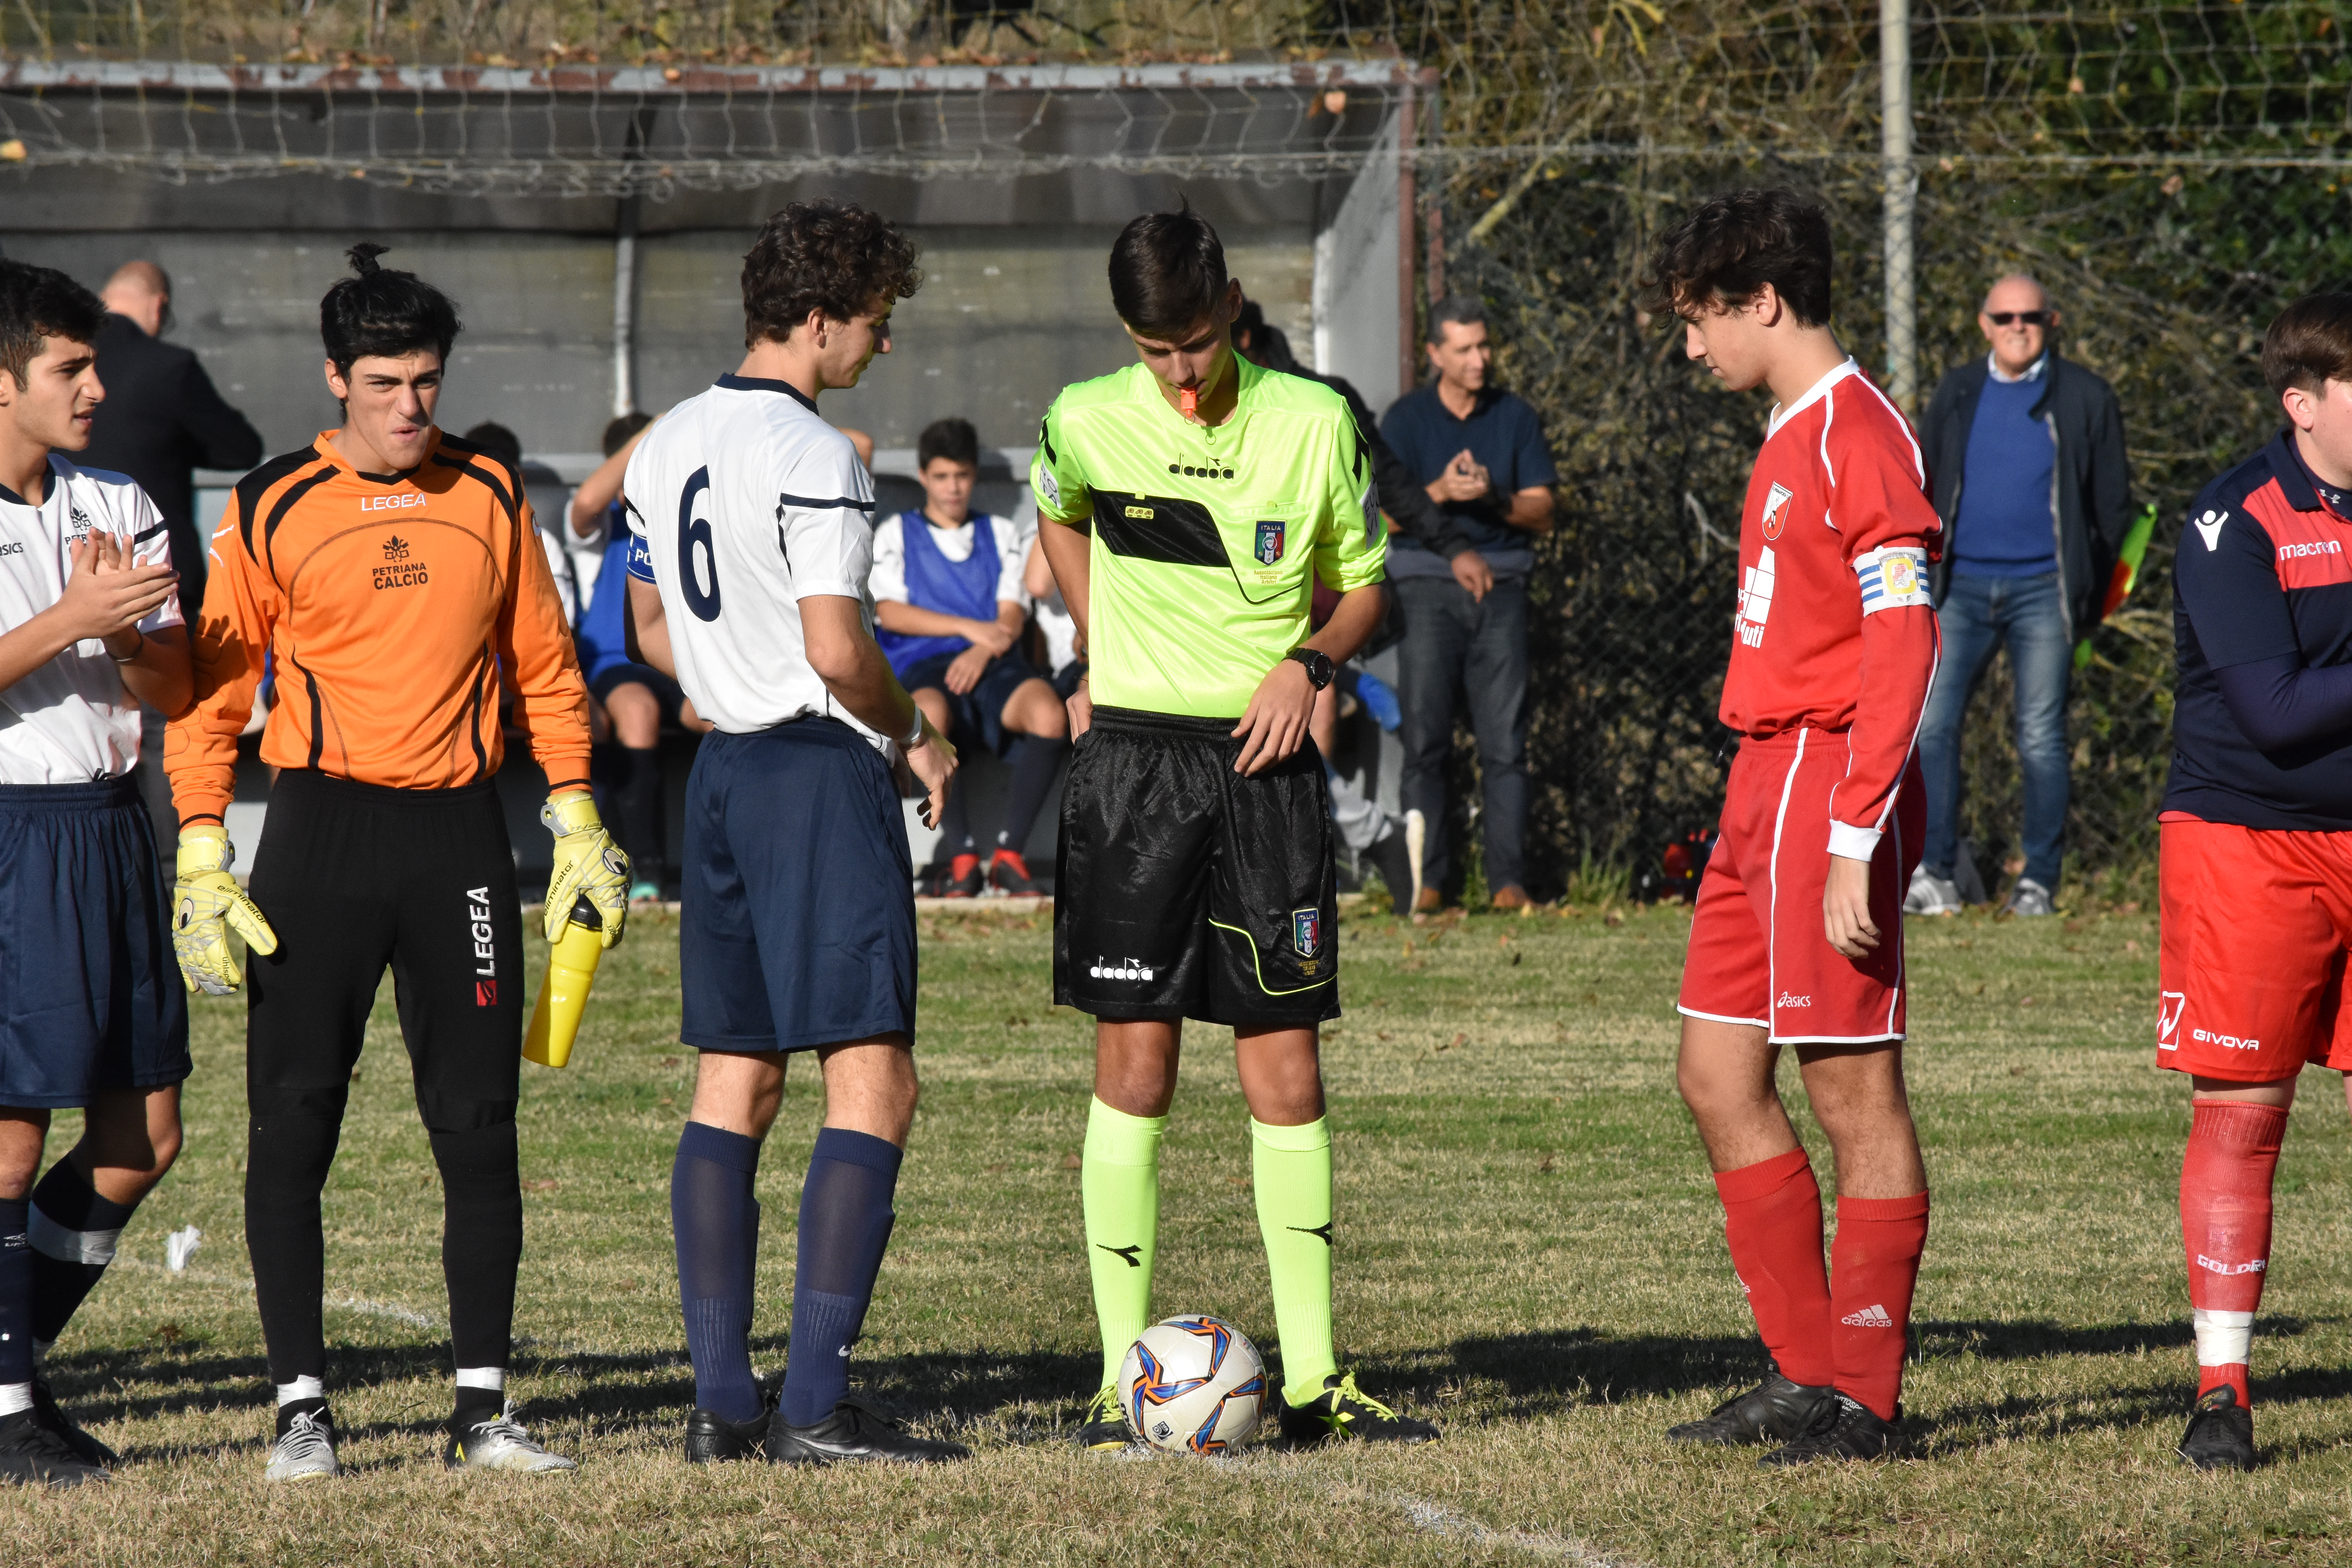 Juniores Provinciali. Prima Porta Saxa Rubra 0-3 Petriana Calcio. Un triplo Botoc porta i gialloblu in testa alla classifica